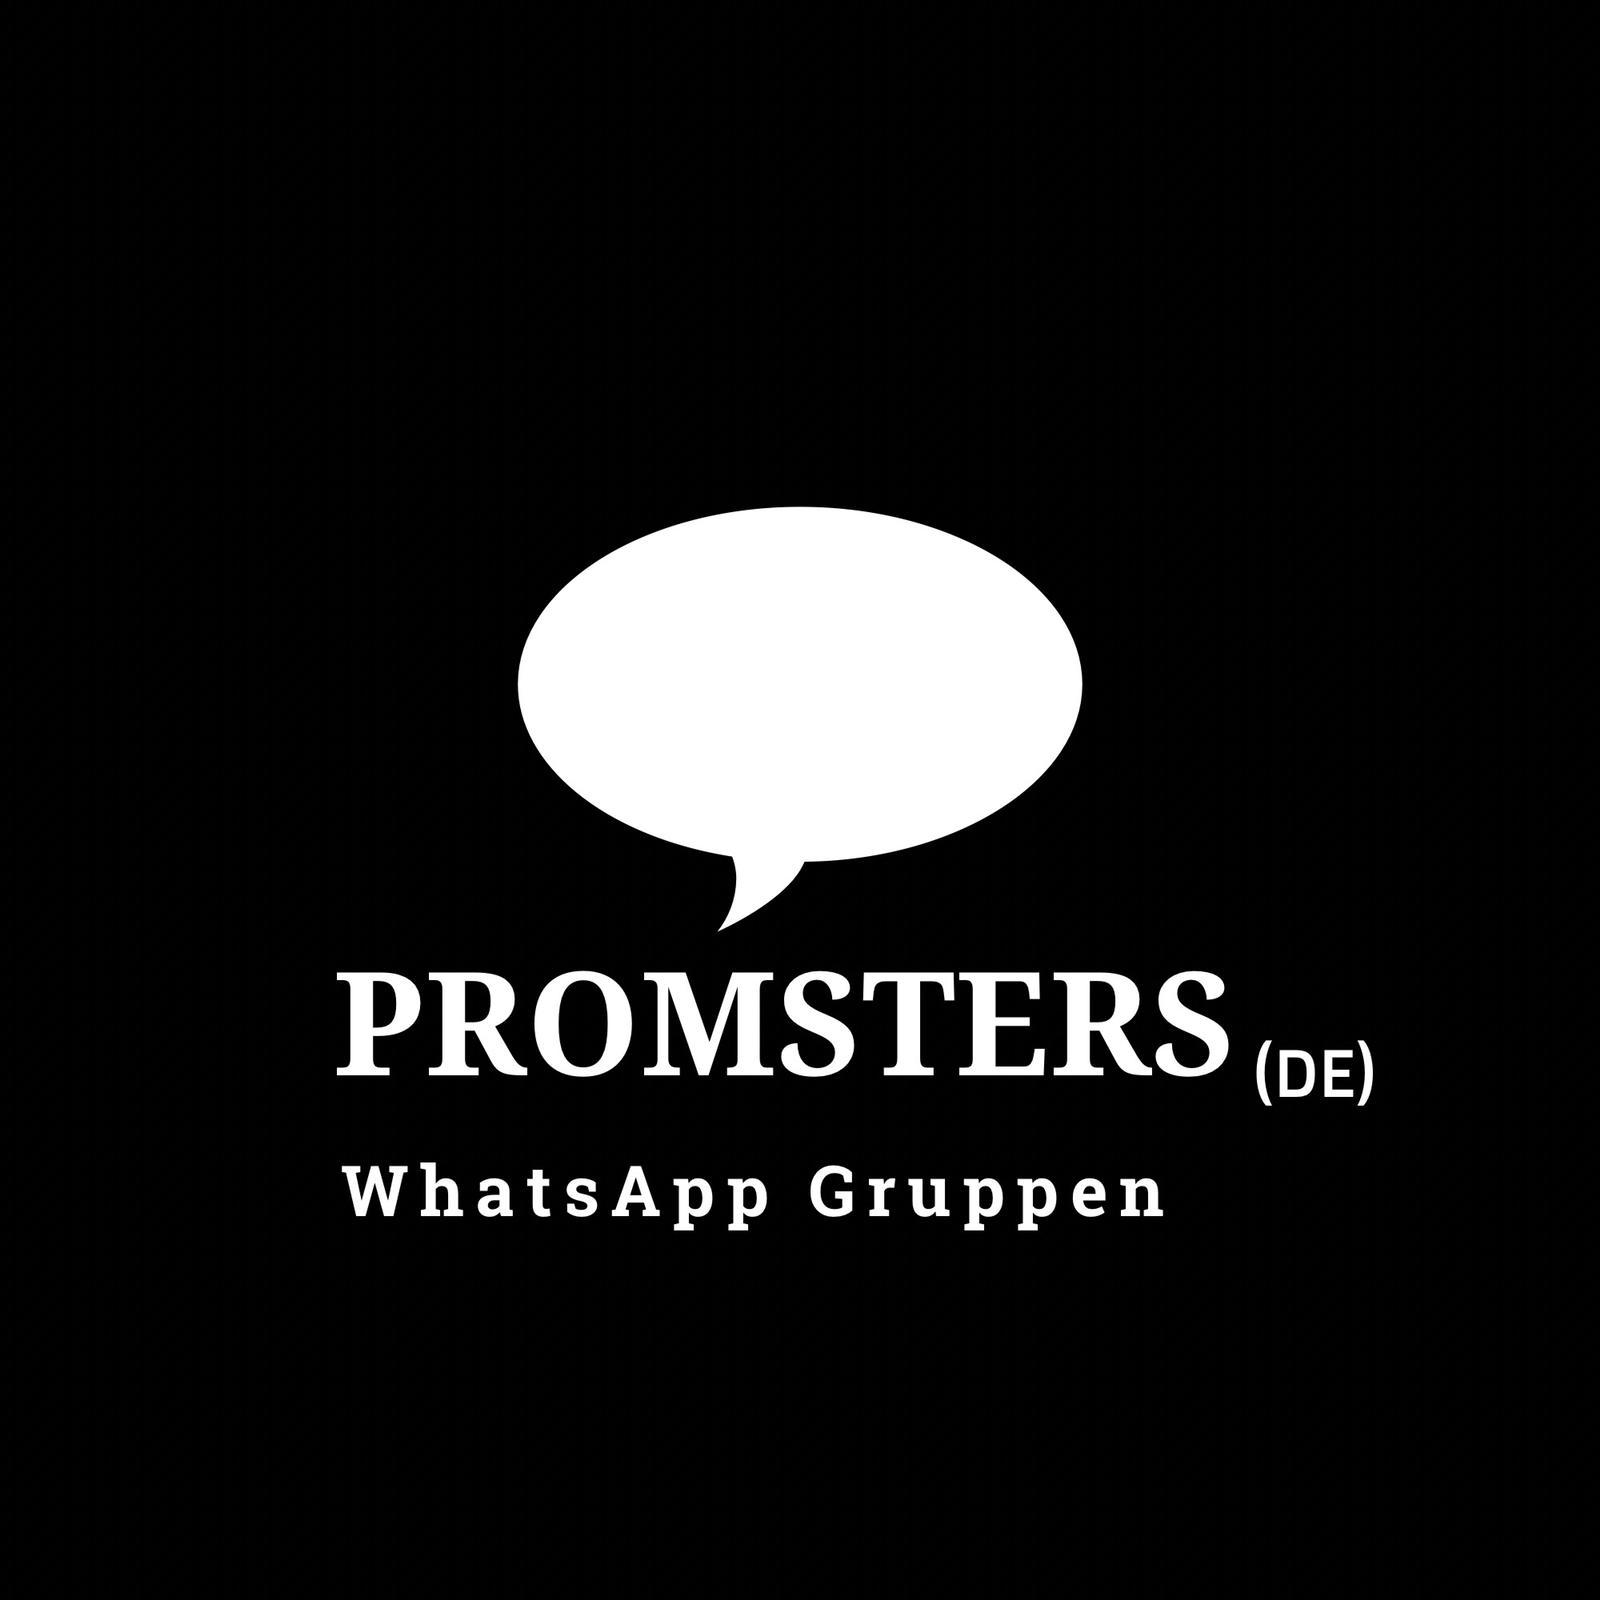 Promsters (DE) - WhatsApp Gruppen -  Logo